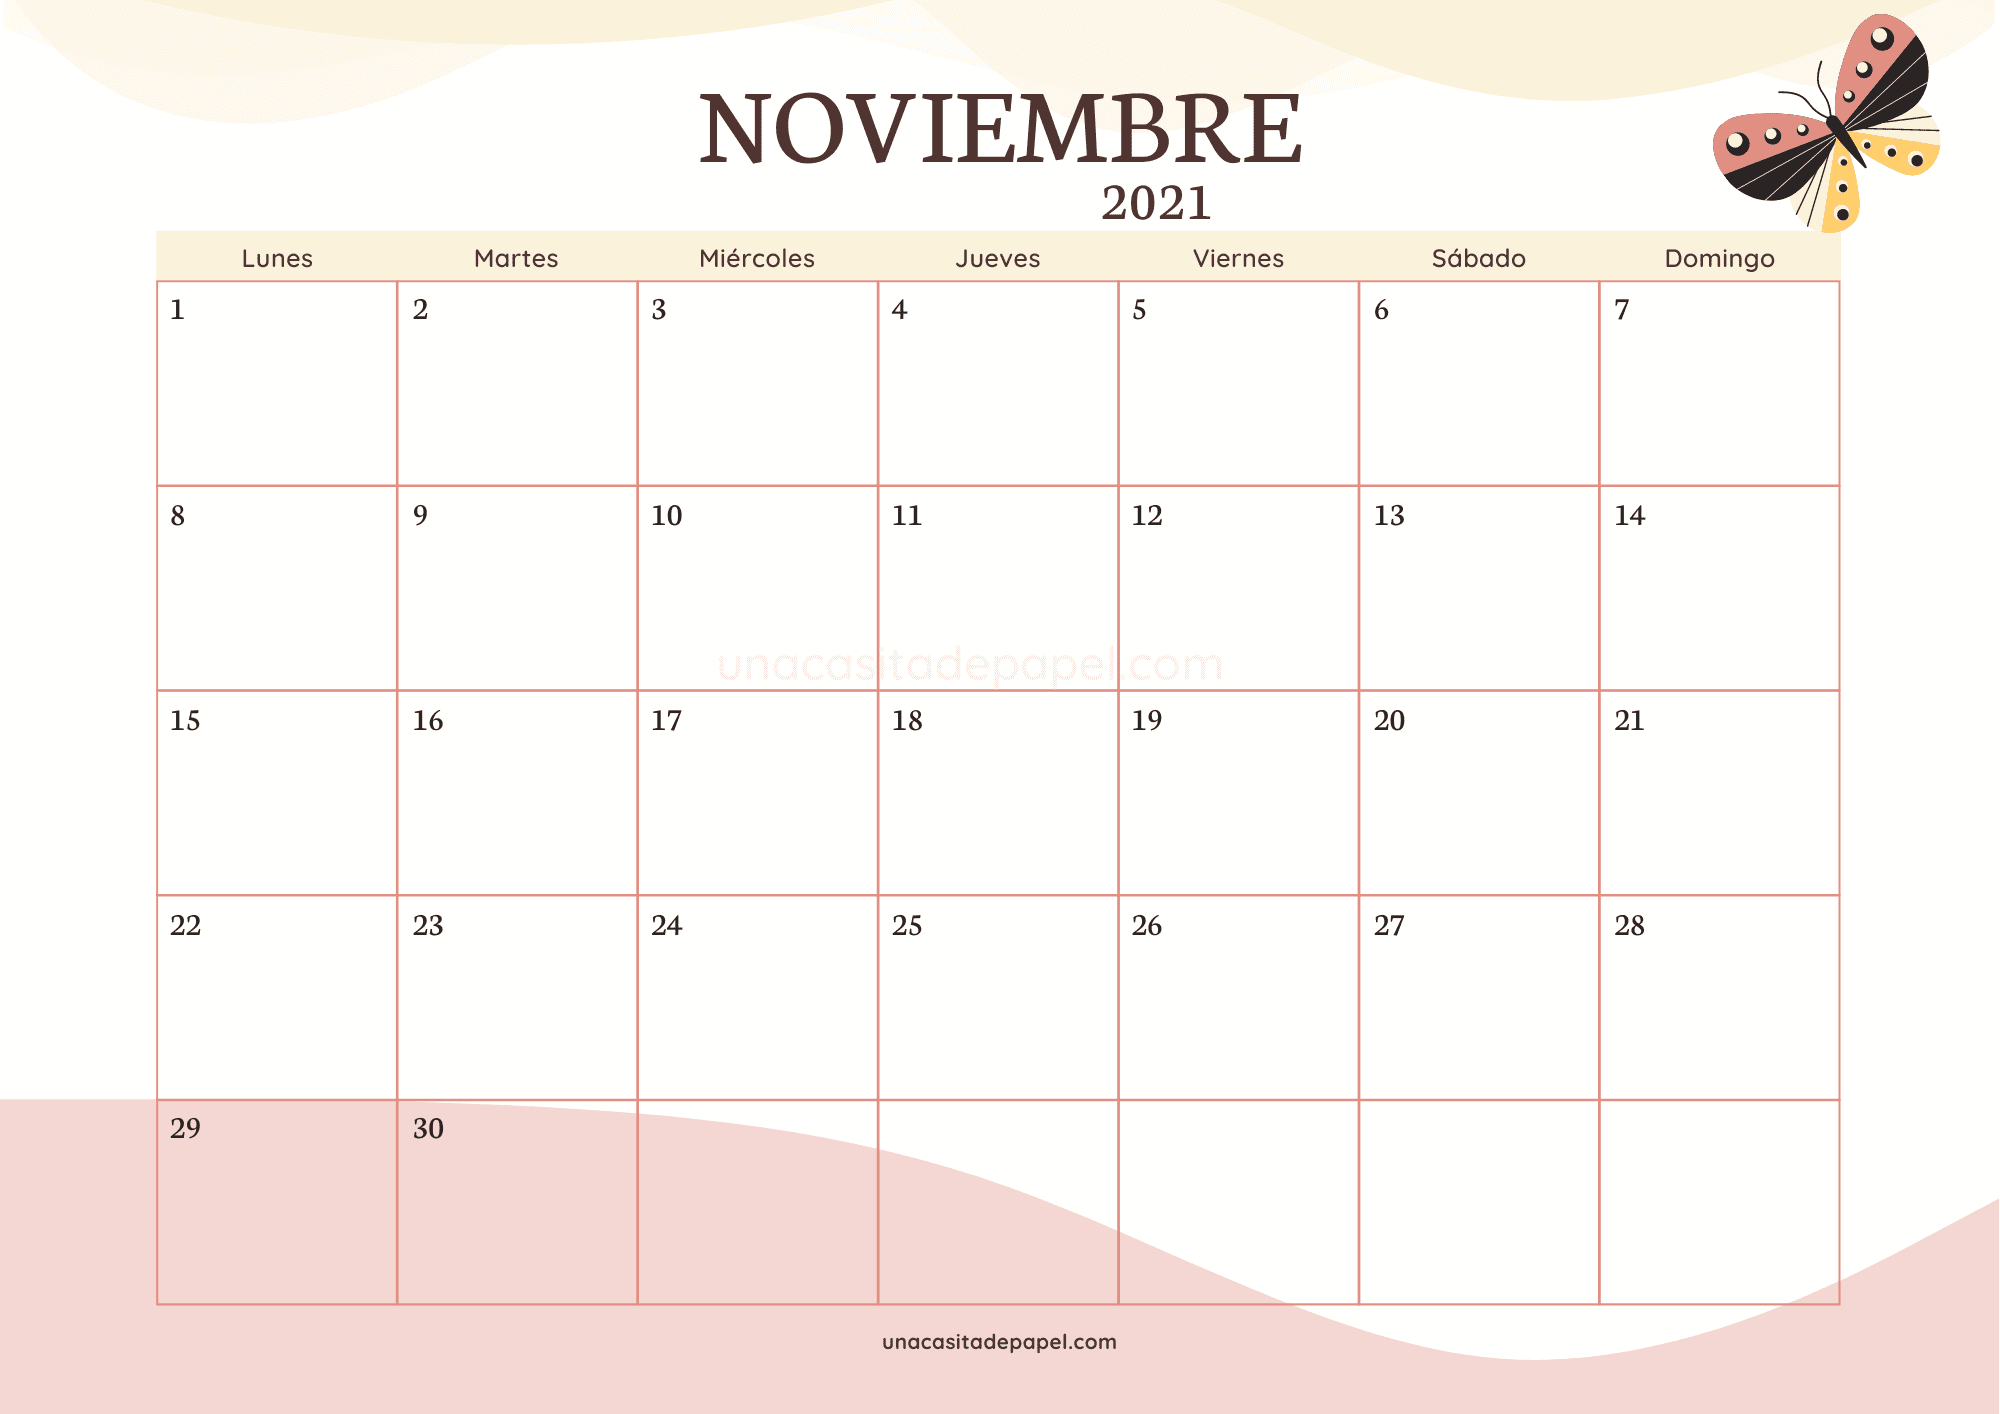 Descarga el calendario noviembre 2021 para imprimir. 